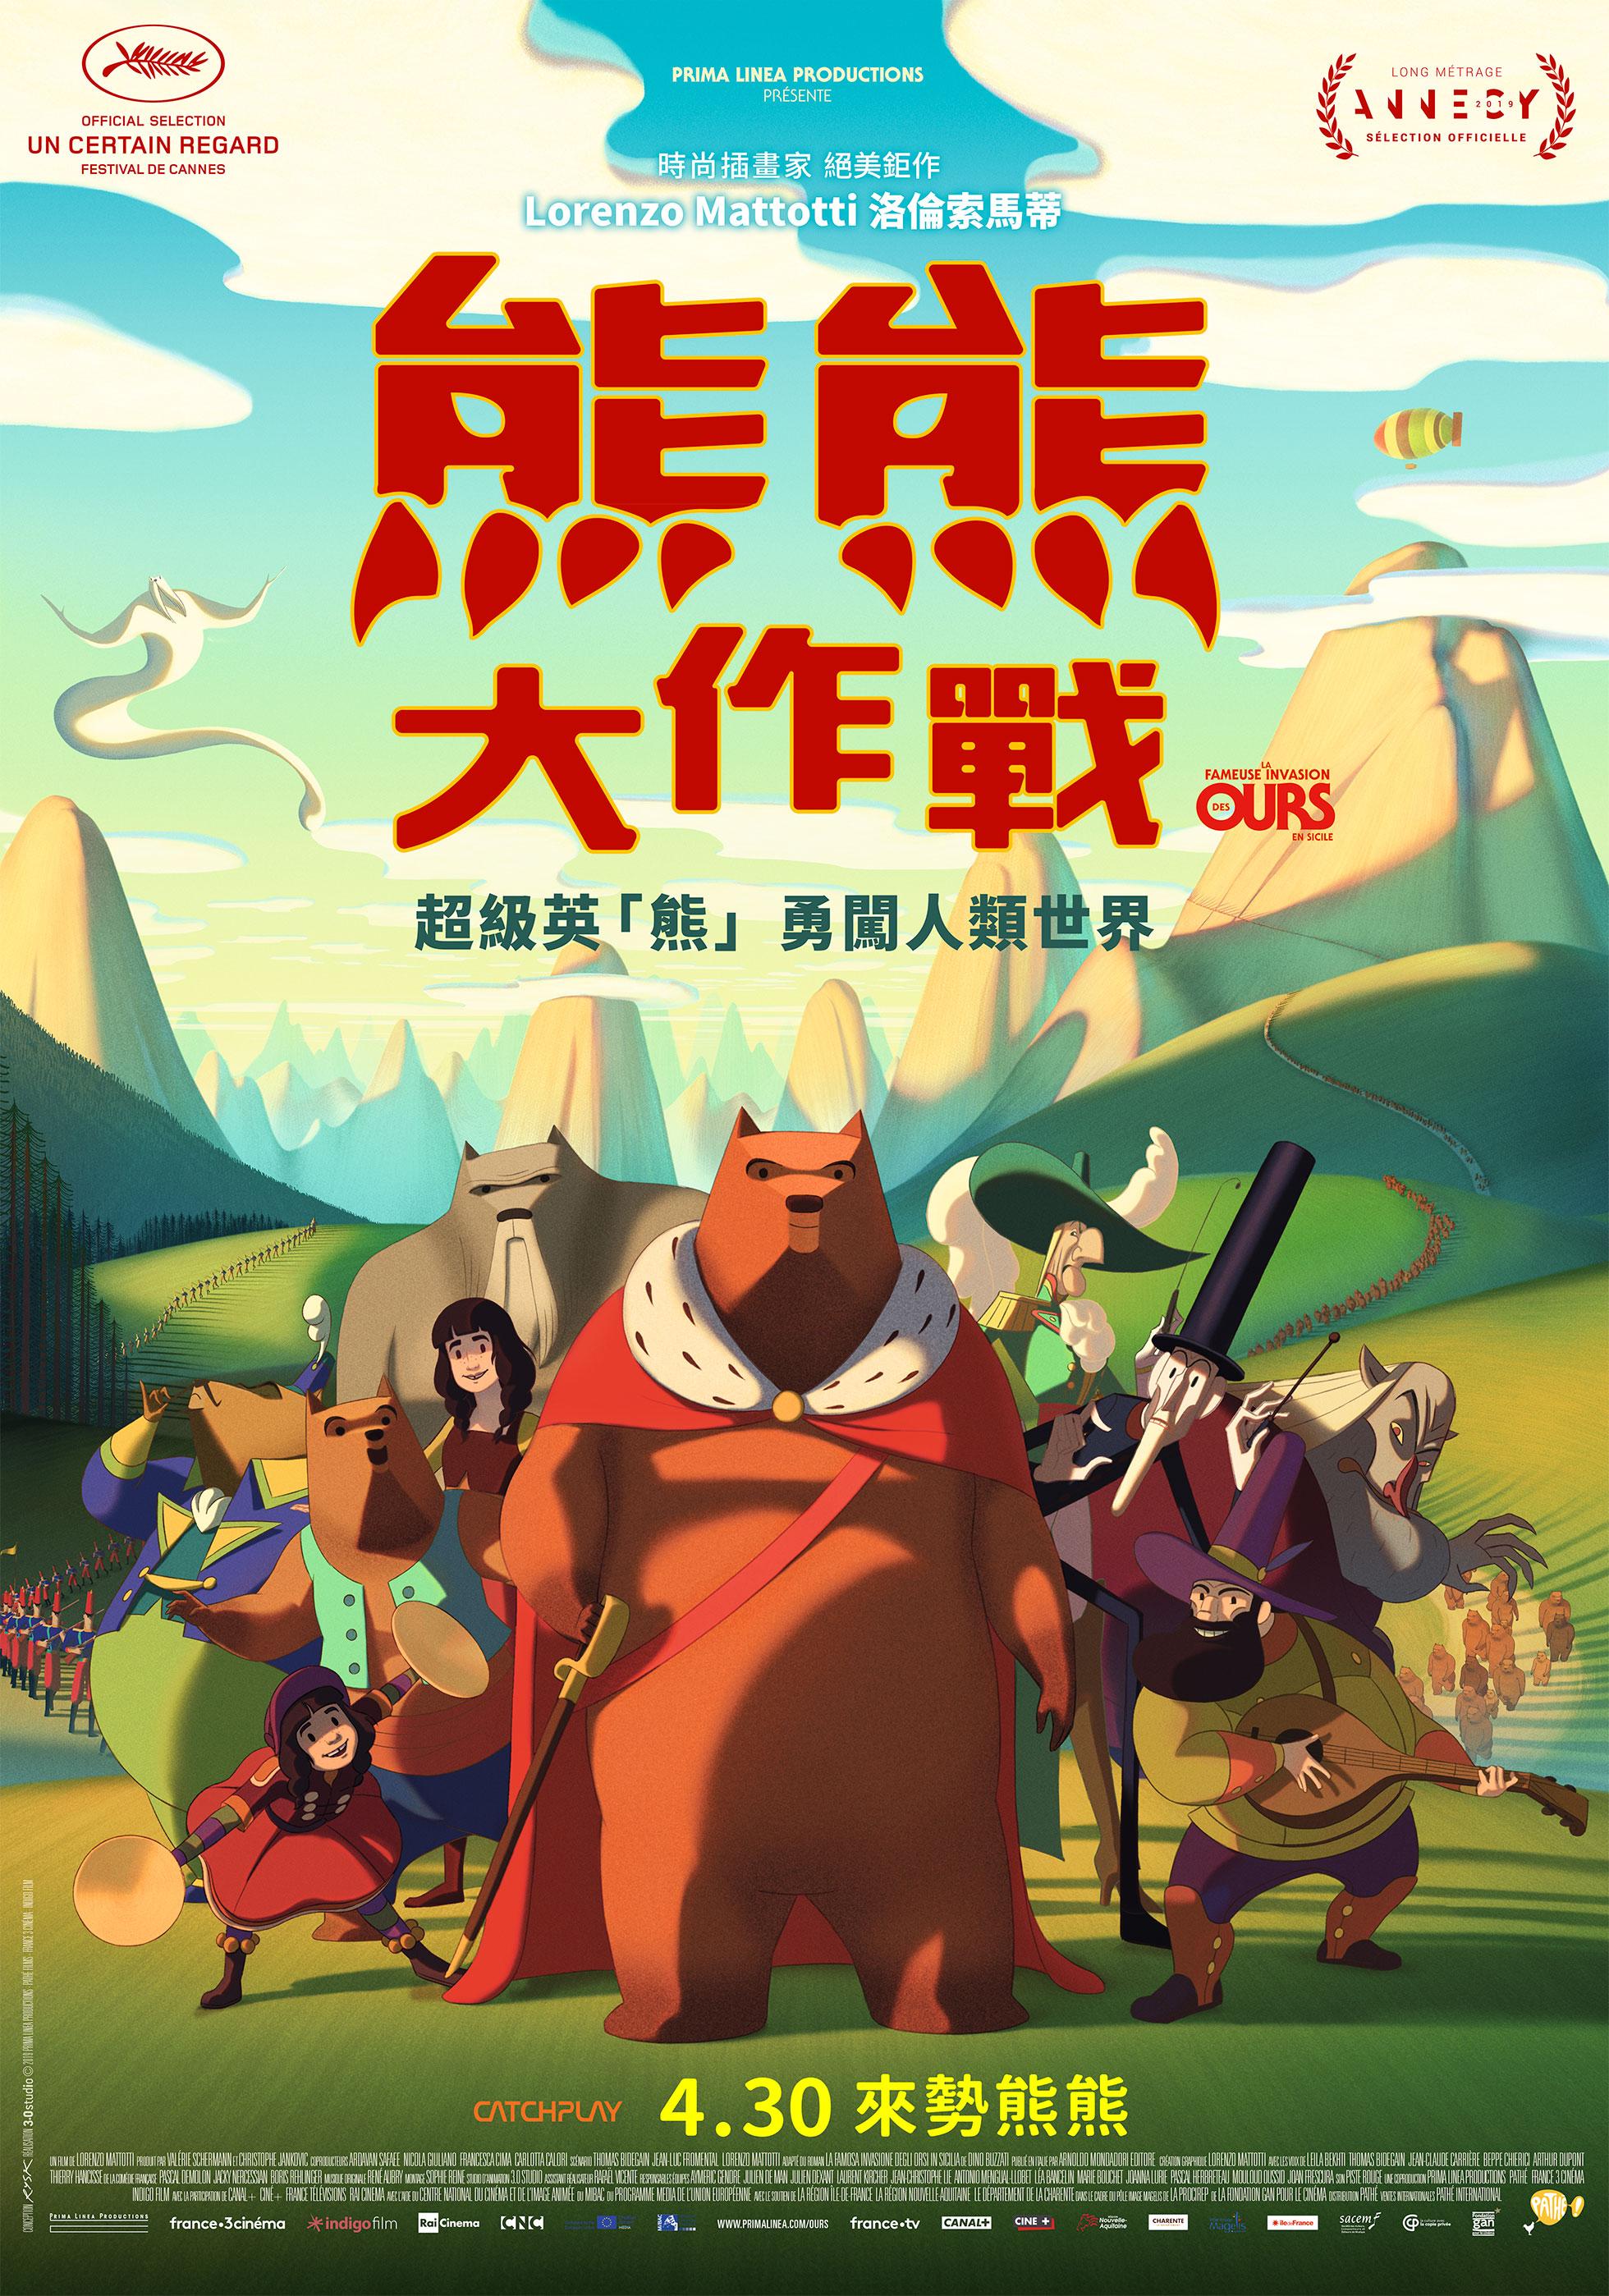 熊熊大作戰 ( La fameuse invasion des ours en sicile)